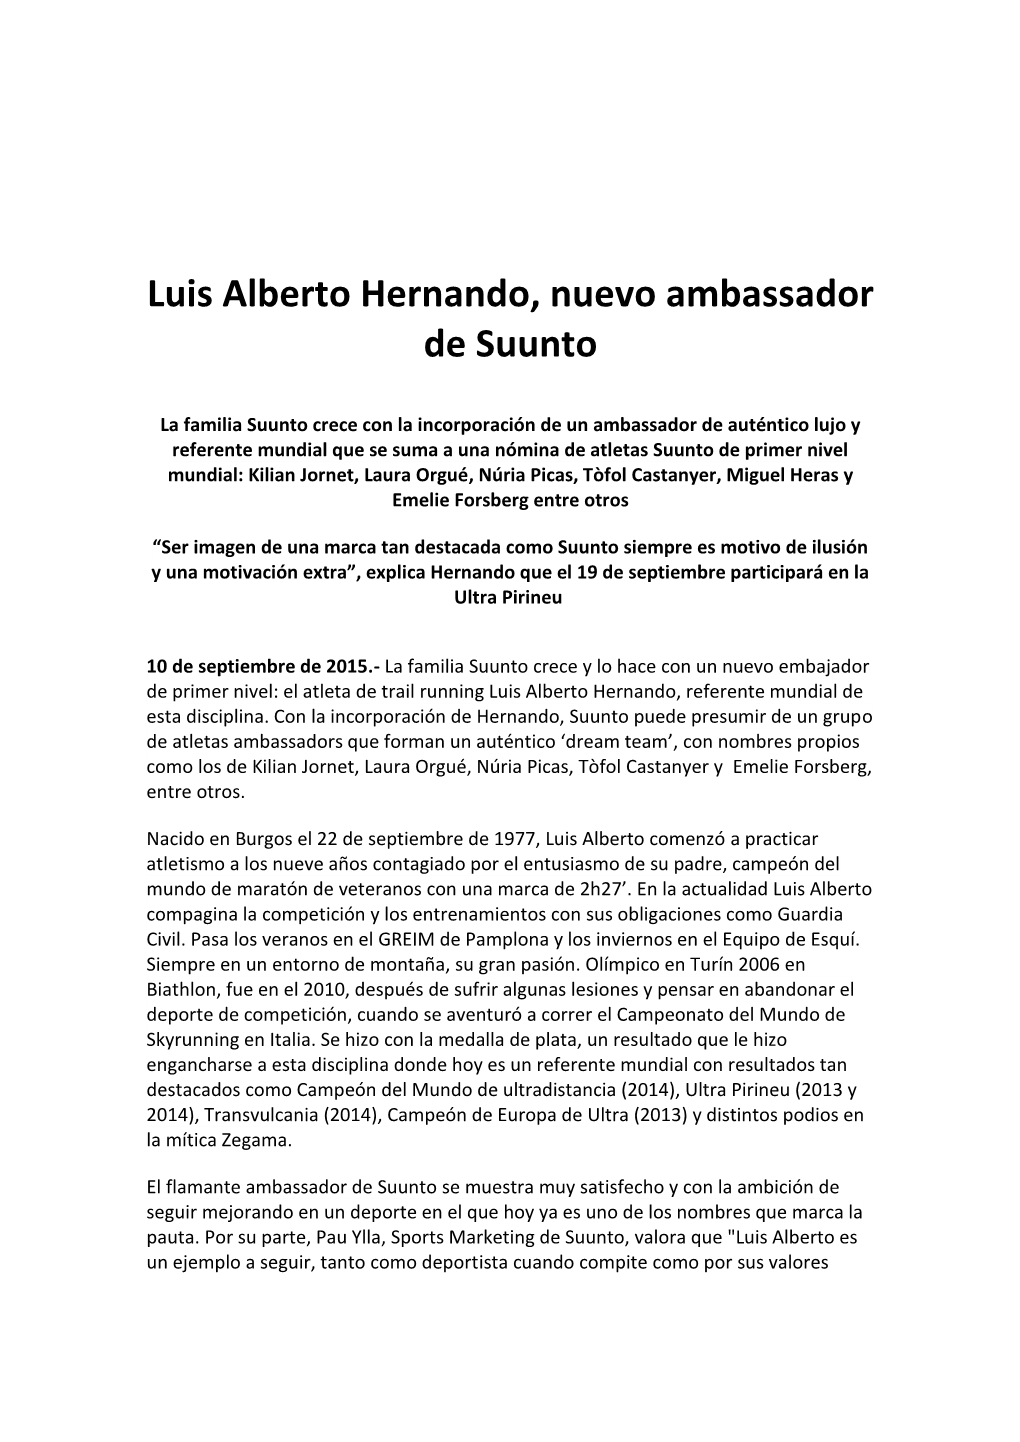 Luis Alberto Hernando, Nuevo Ambassador De Suunto